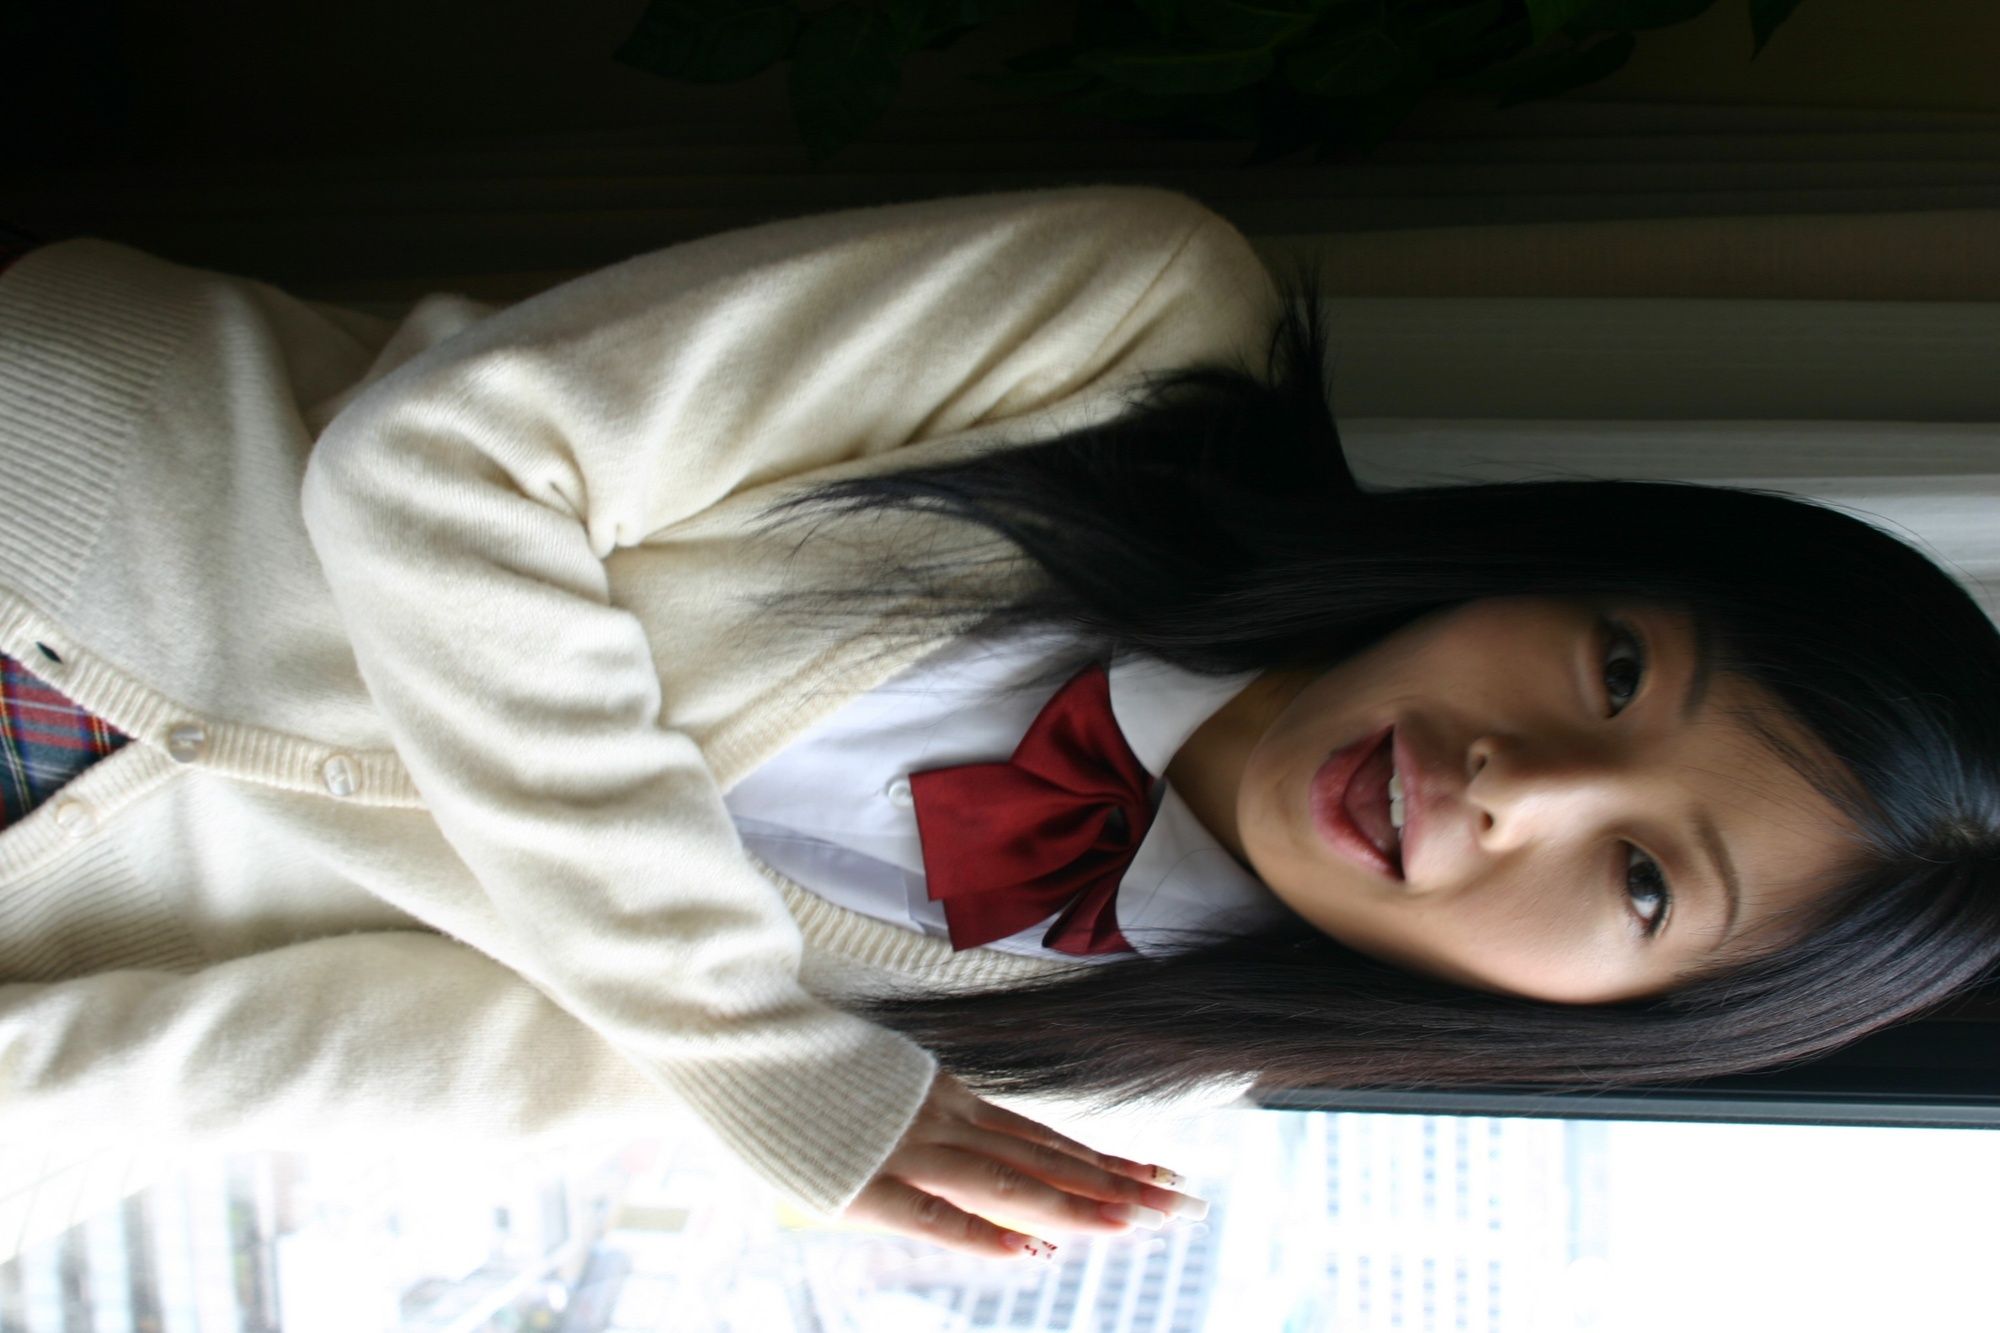 Asian schoolgirl looks for some online exposure #49